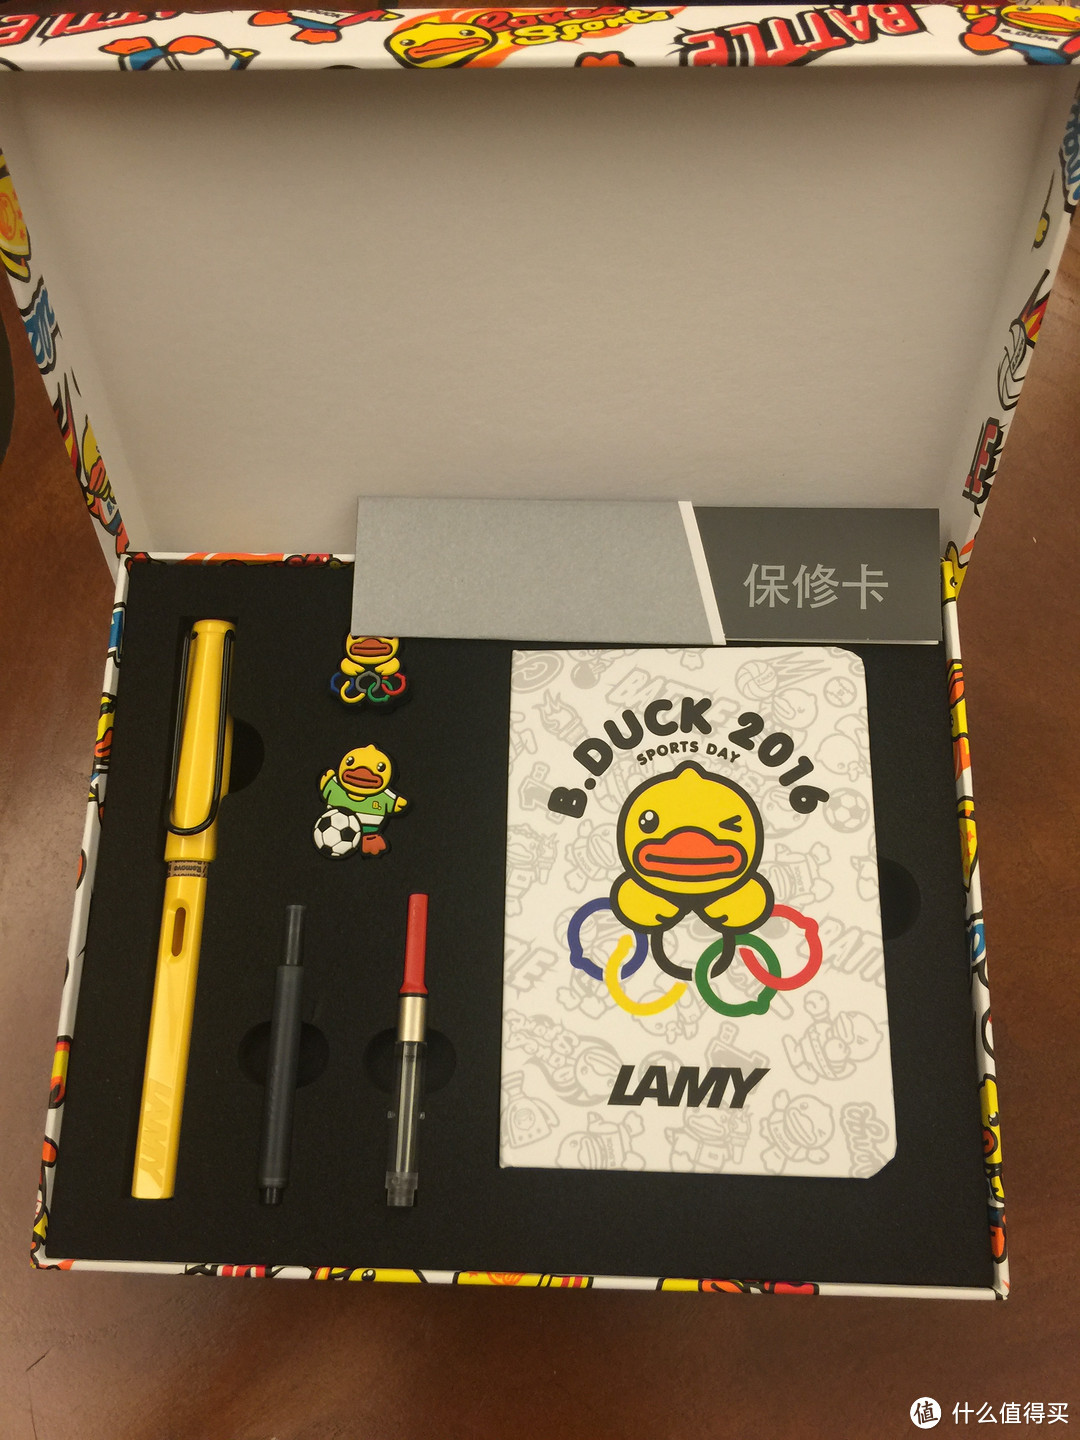 #原创新人# LAMY 凌美 sports day系列 小黄鸭墨水笔套装 开箱